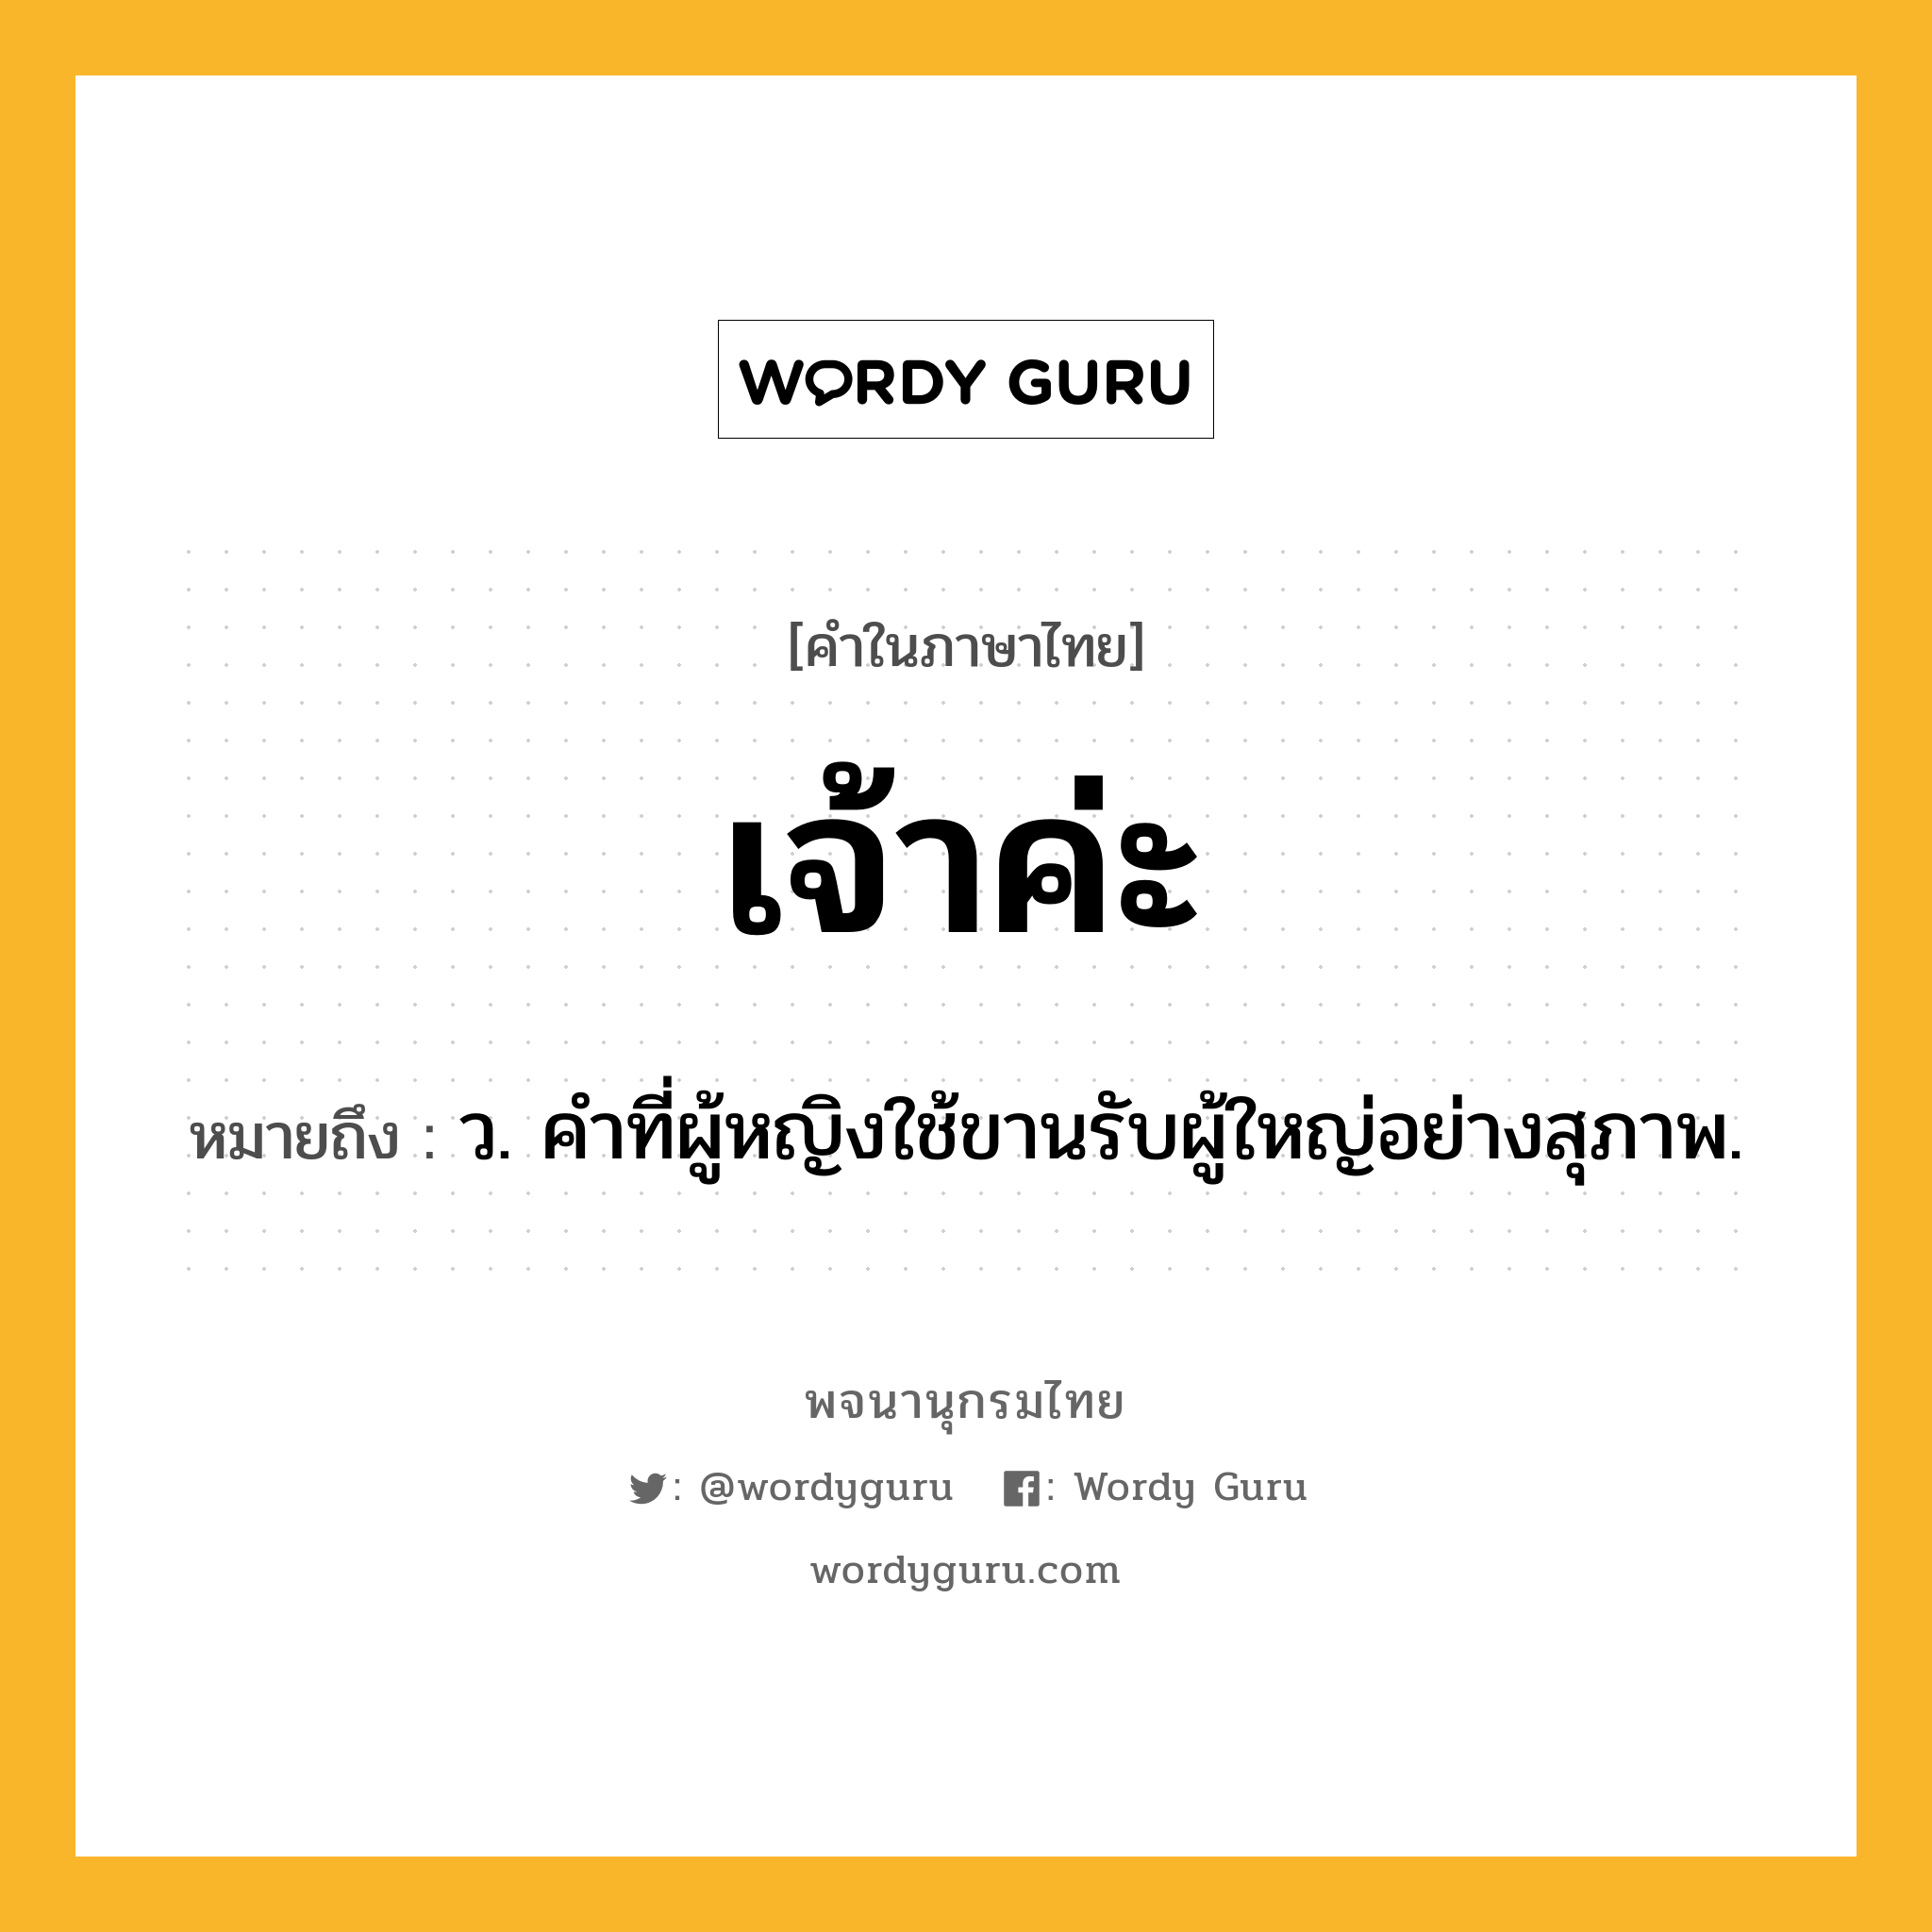 เจ้าค่ะ หมายถึงอะไร?, คำในภาษาไทย เจ้าค่ะ หมายถึง ว. คำที่ผู้หญิงใช้ขานรับผู้ใหญ่อย่างสุภาพ.